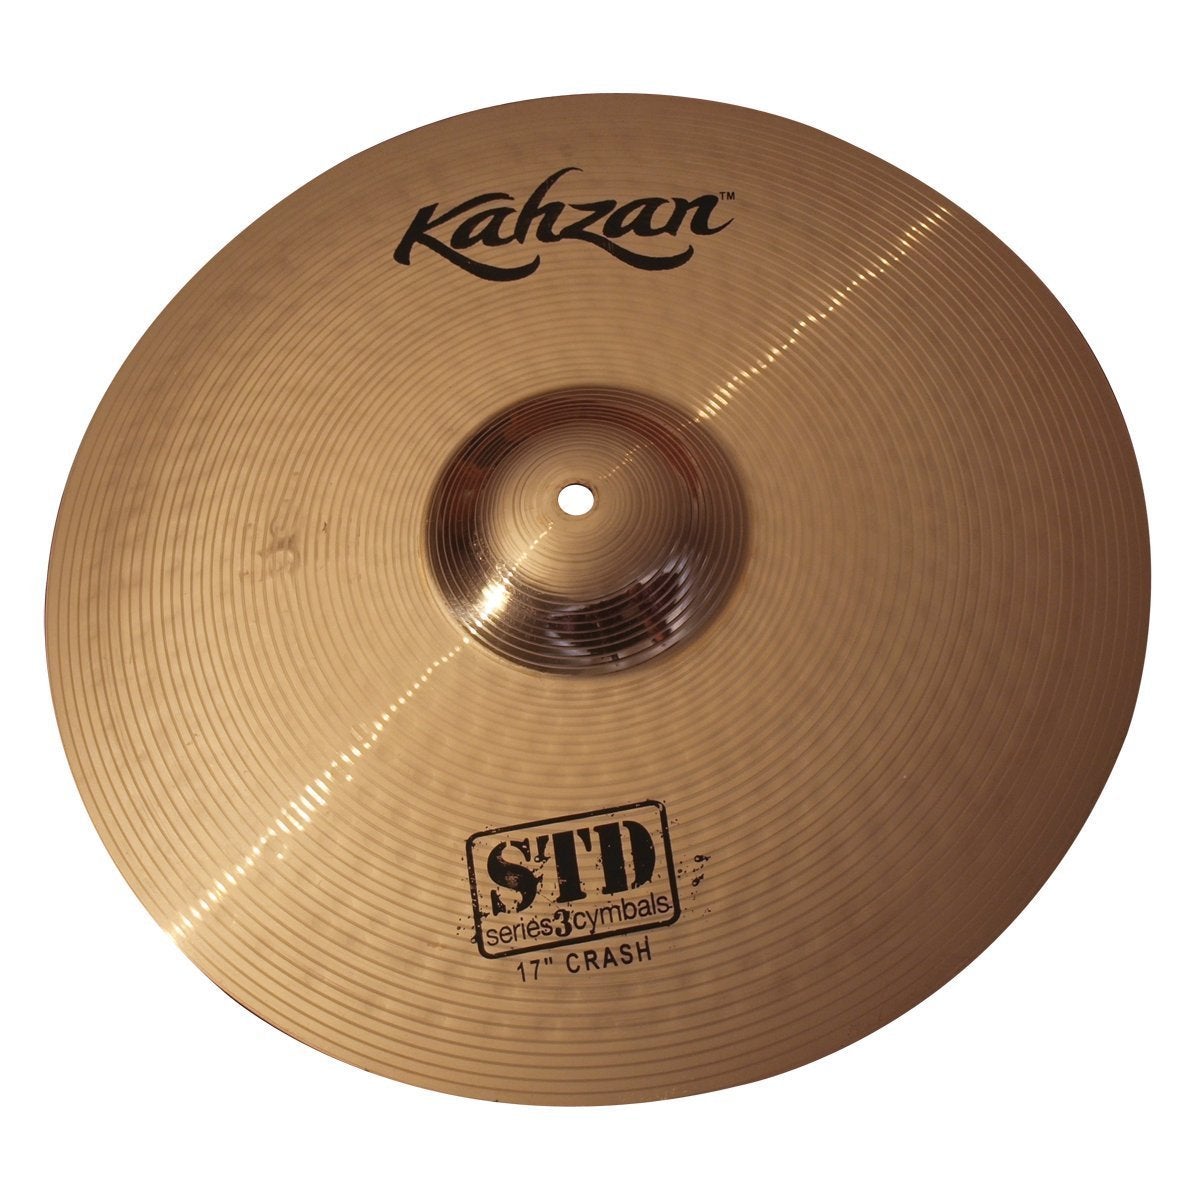 Kahzan 'STD-3 Series' Crash Cymbal (17")